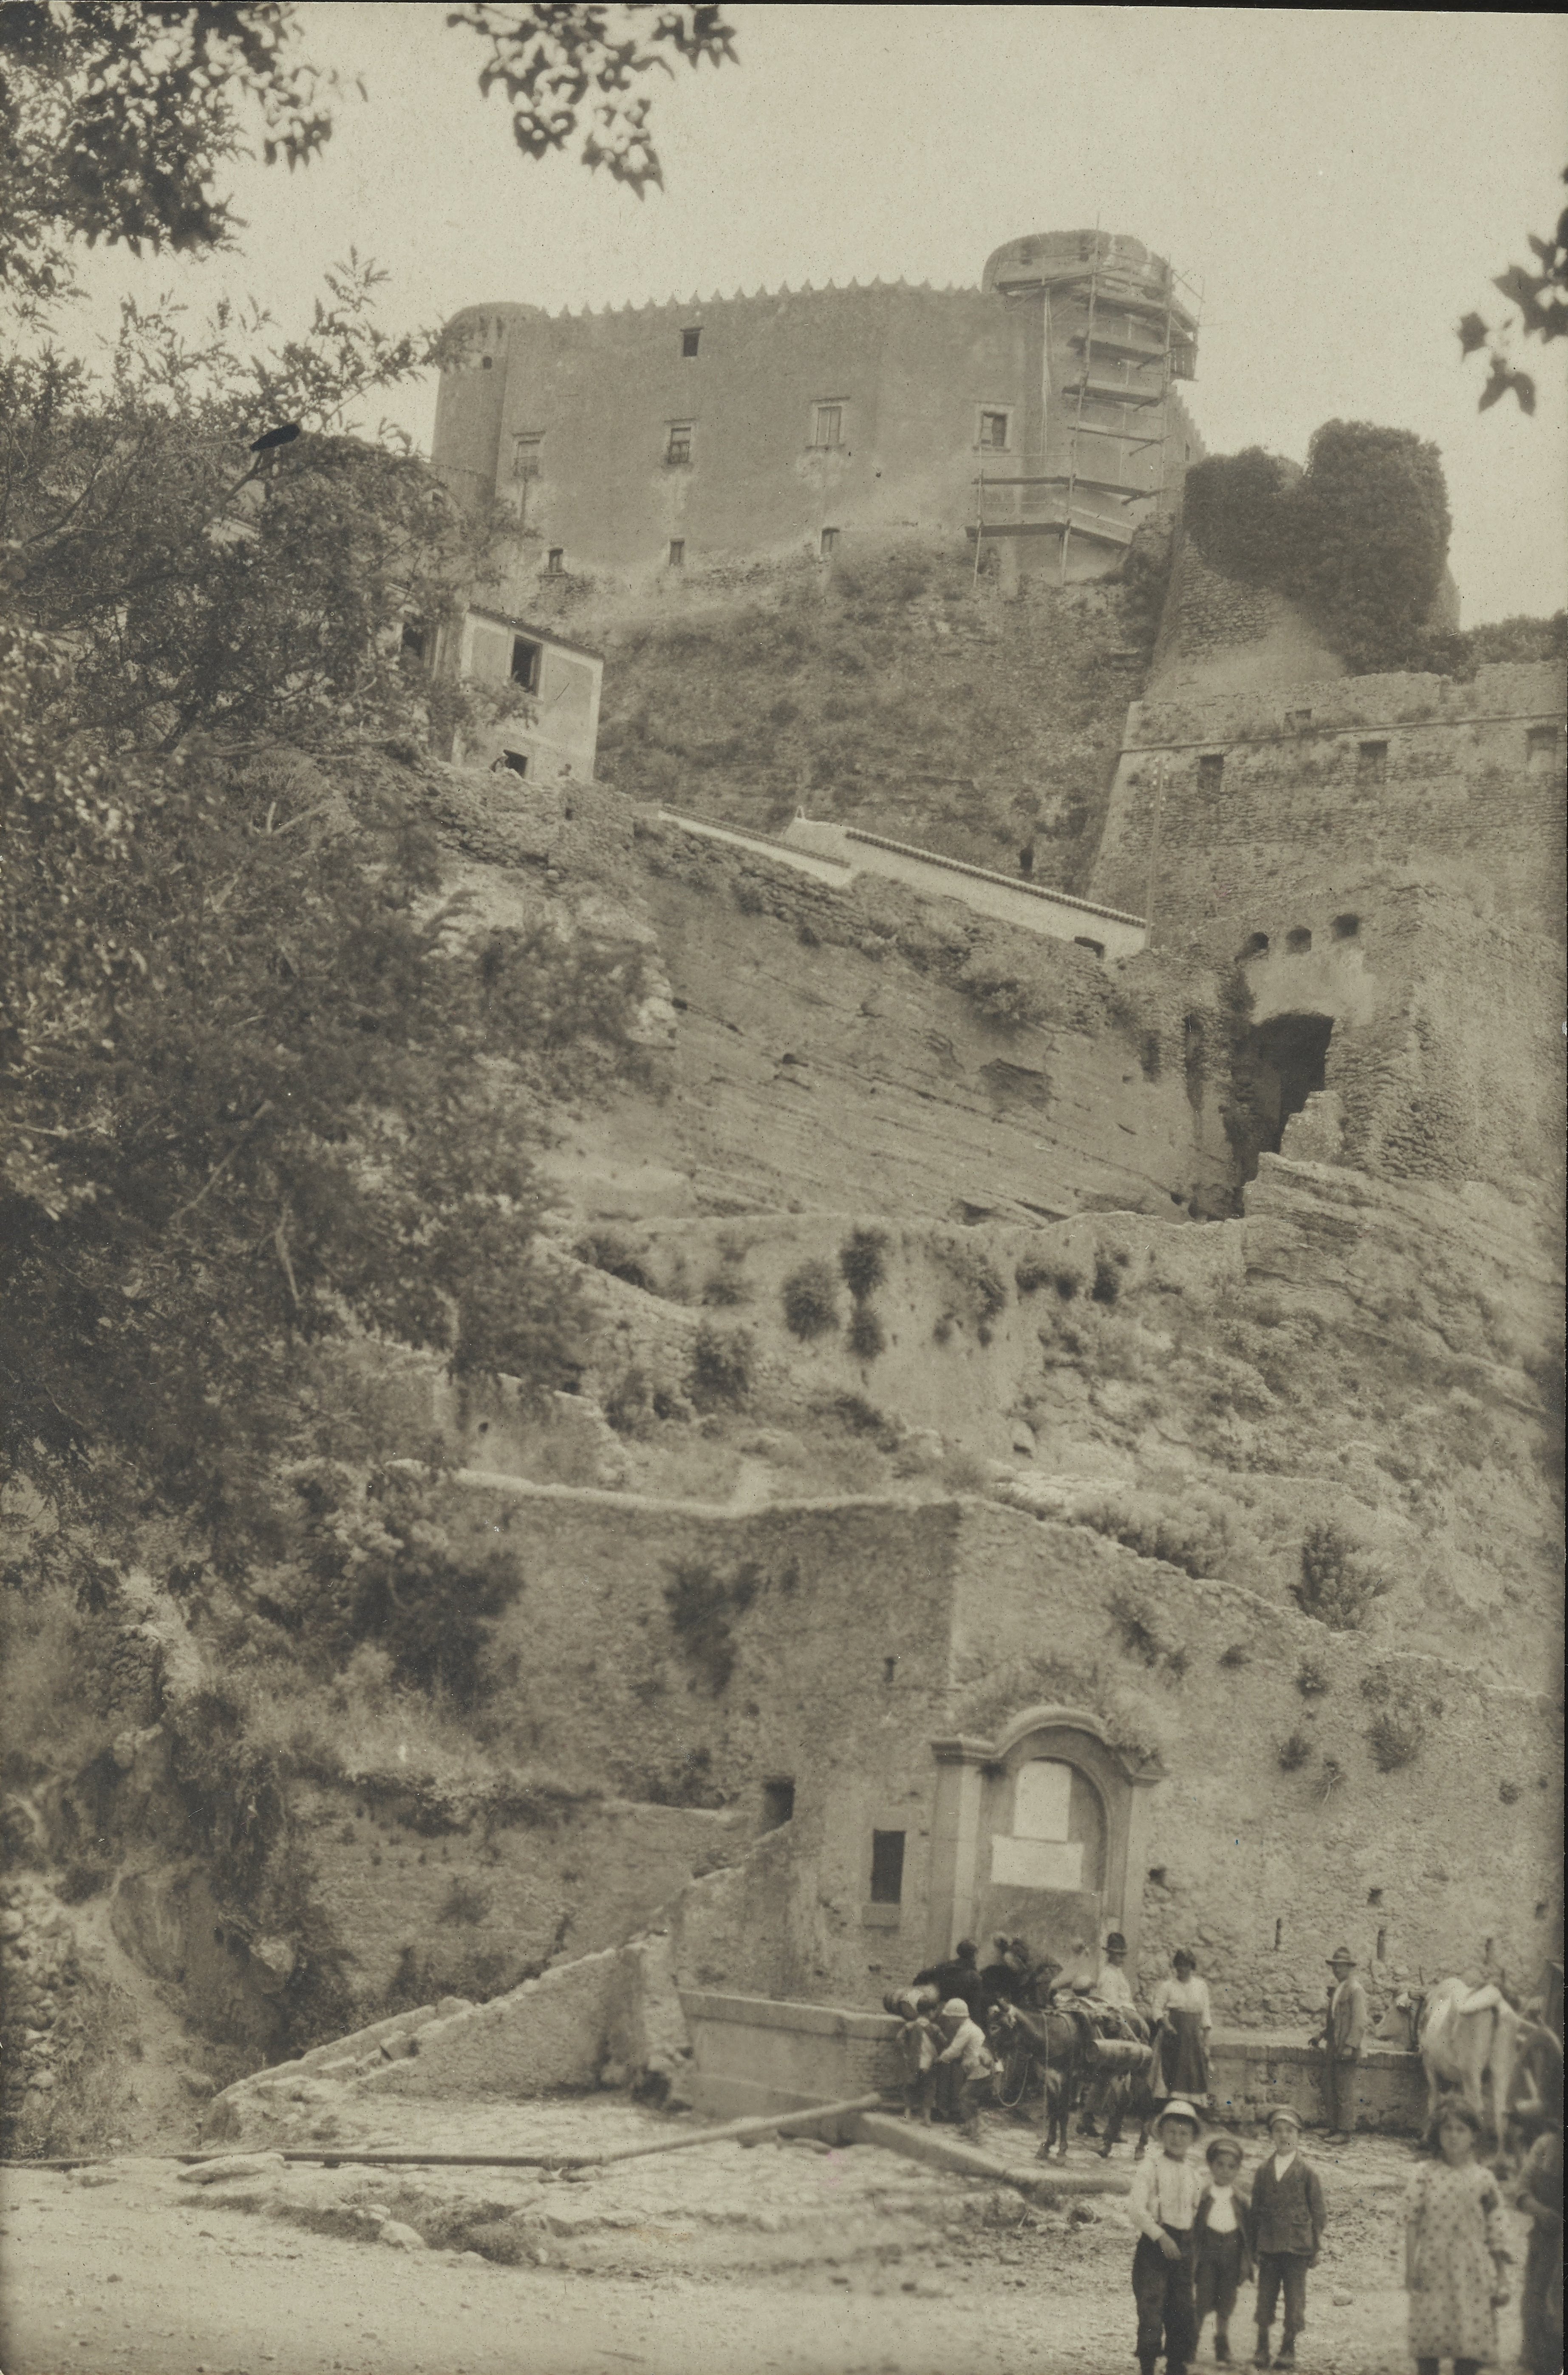 Fotografo non identificato, Santa Severina - Castello, in basso vicino alla fonte un gruppo di persone con animali, MPI6094674